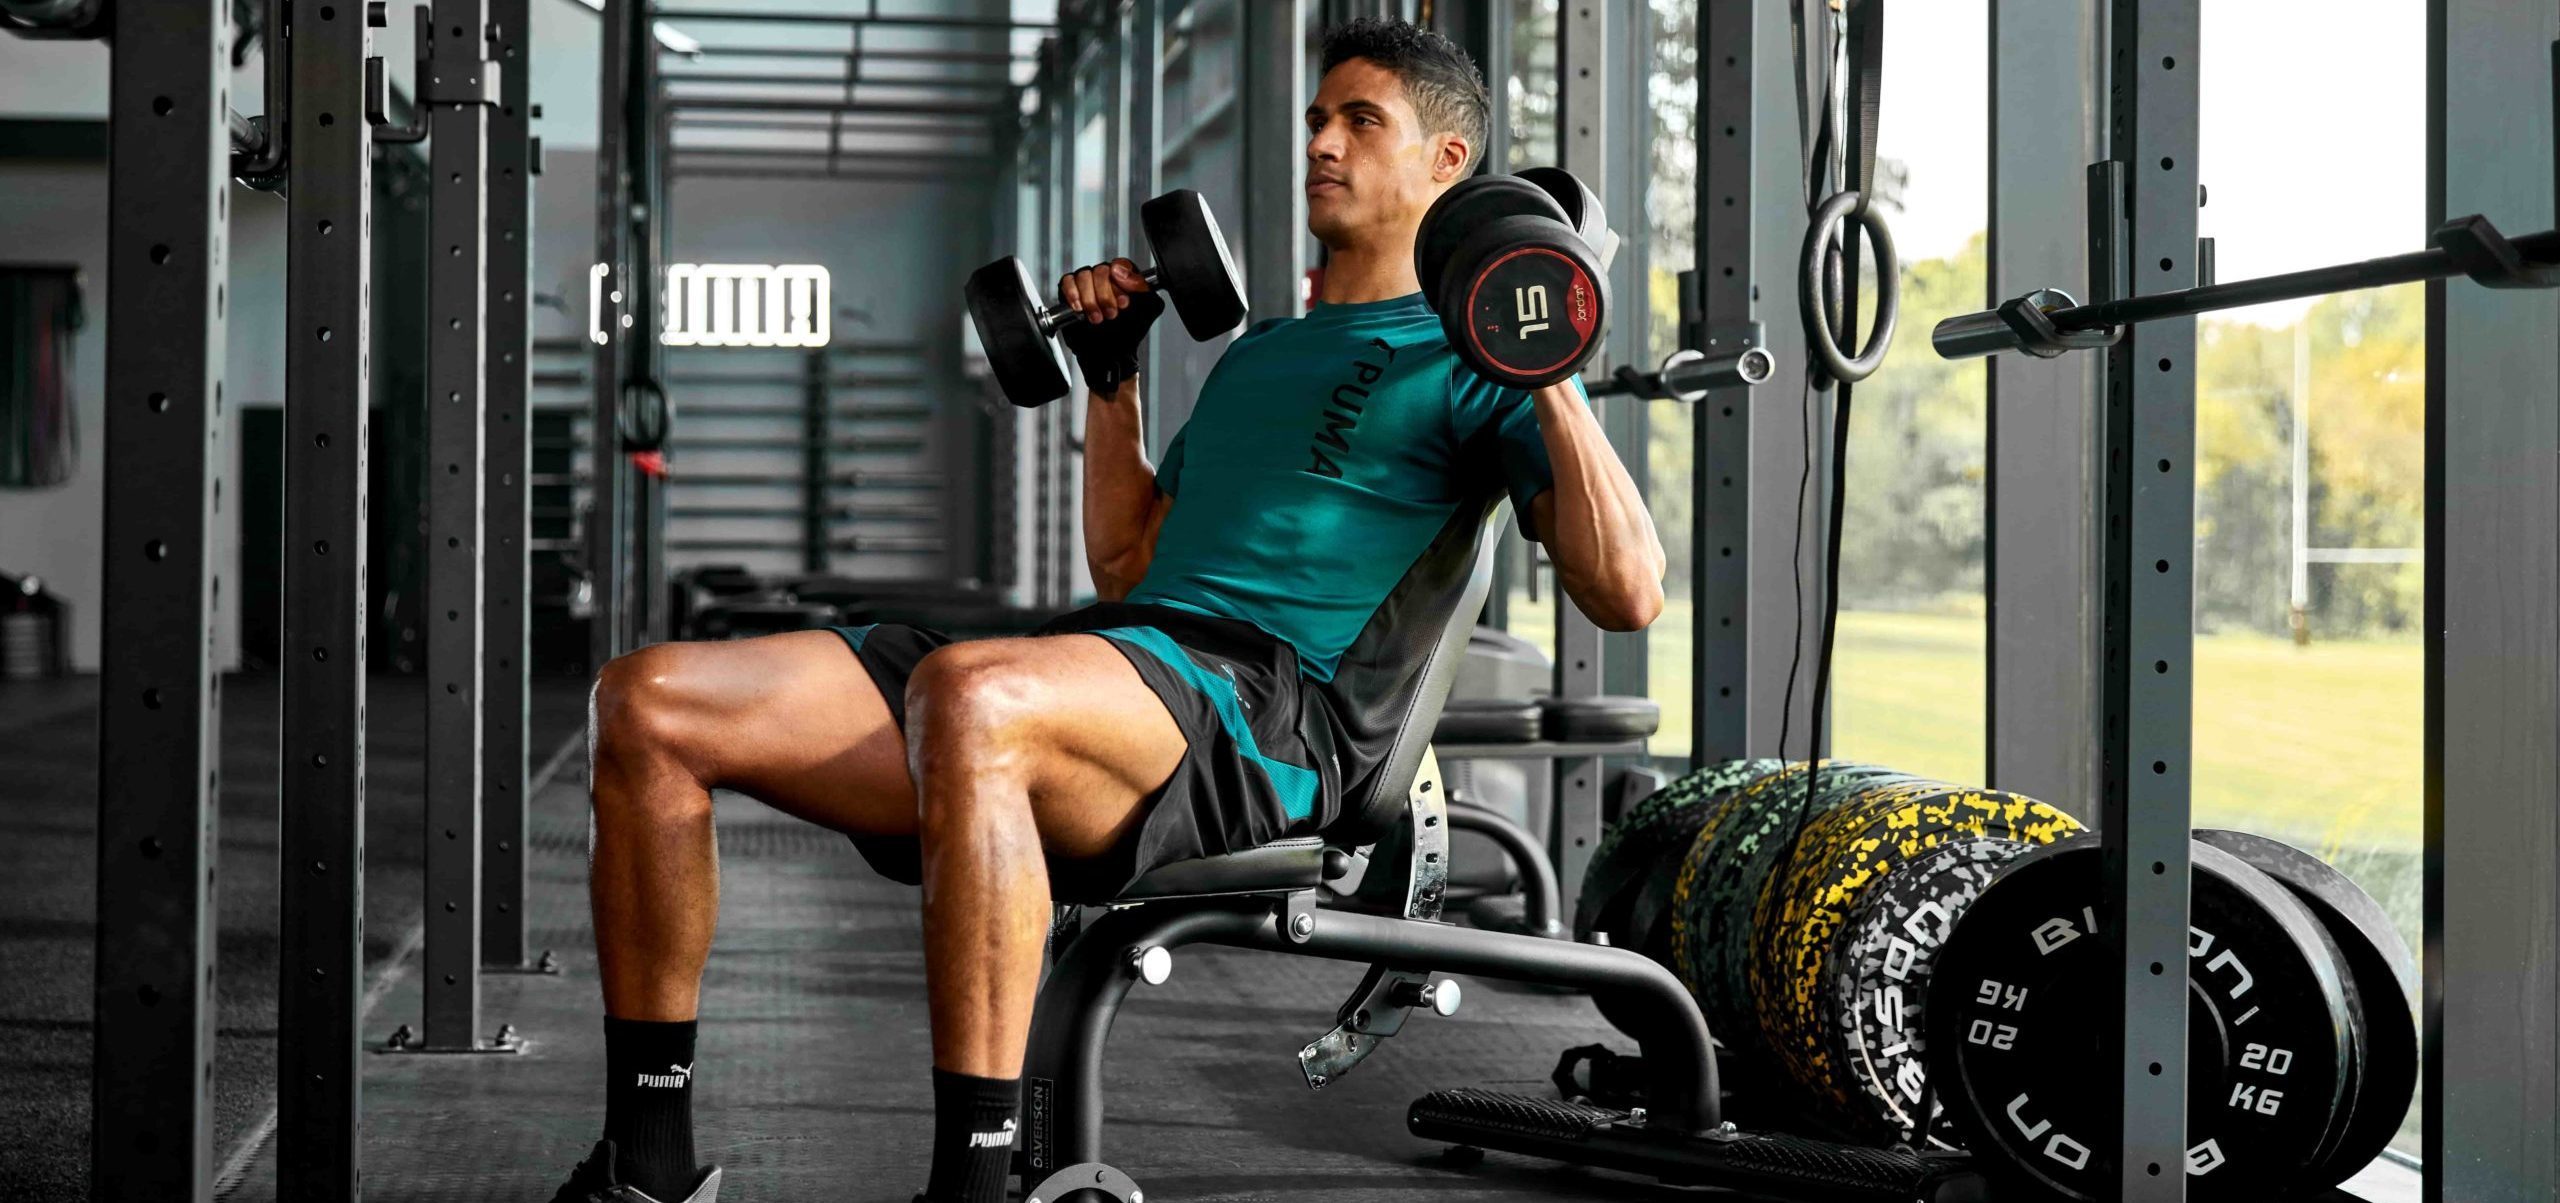 Un homme en tenue de sport PUMA est dans une salle de fitness en train de faire des exercices de musculation des bras